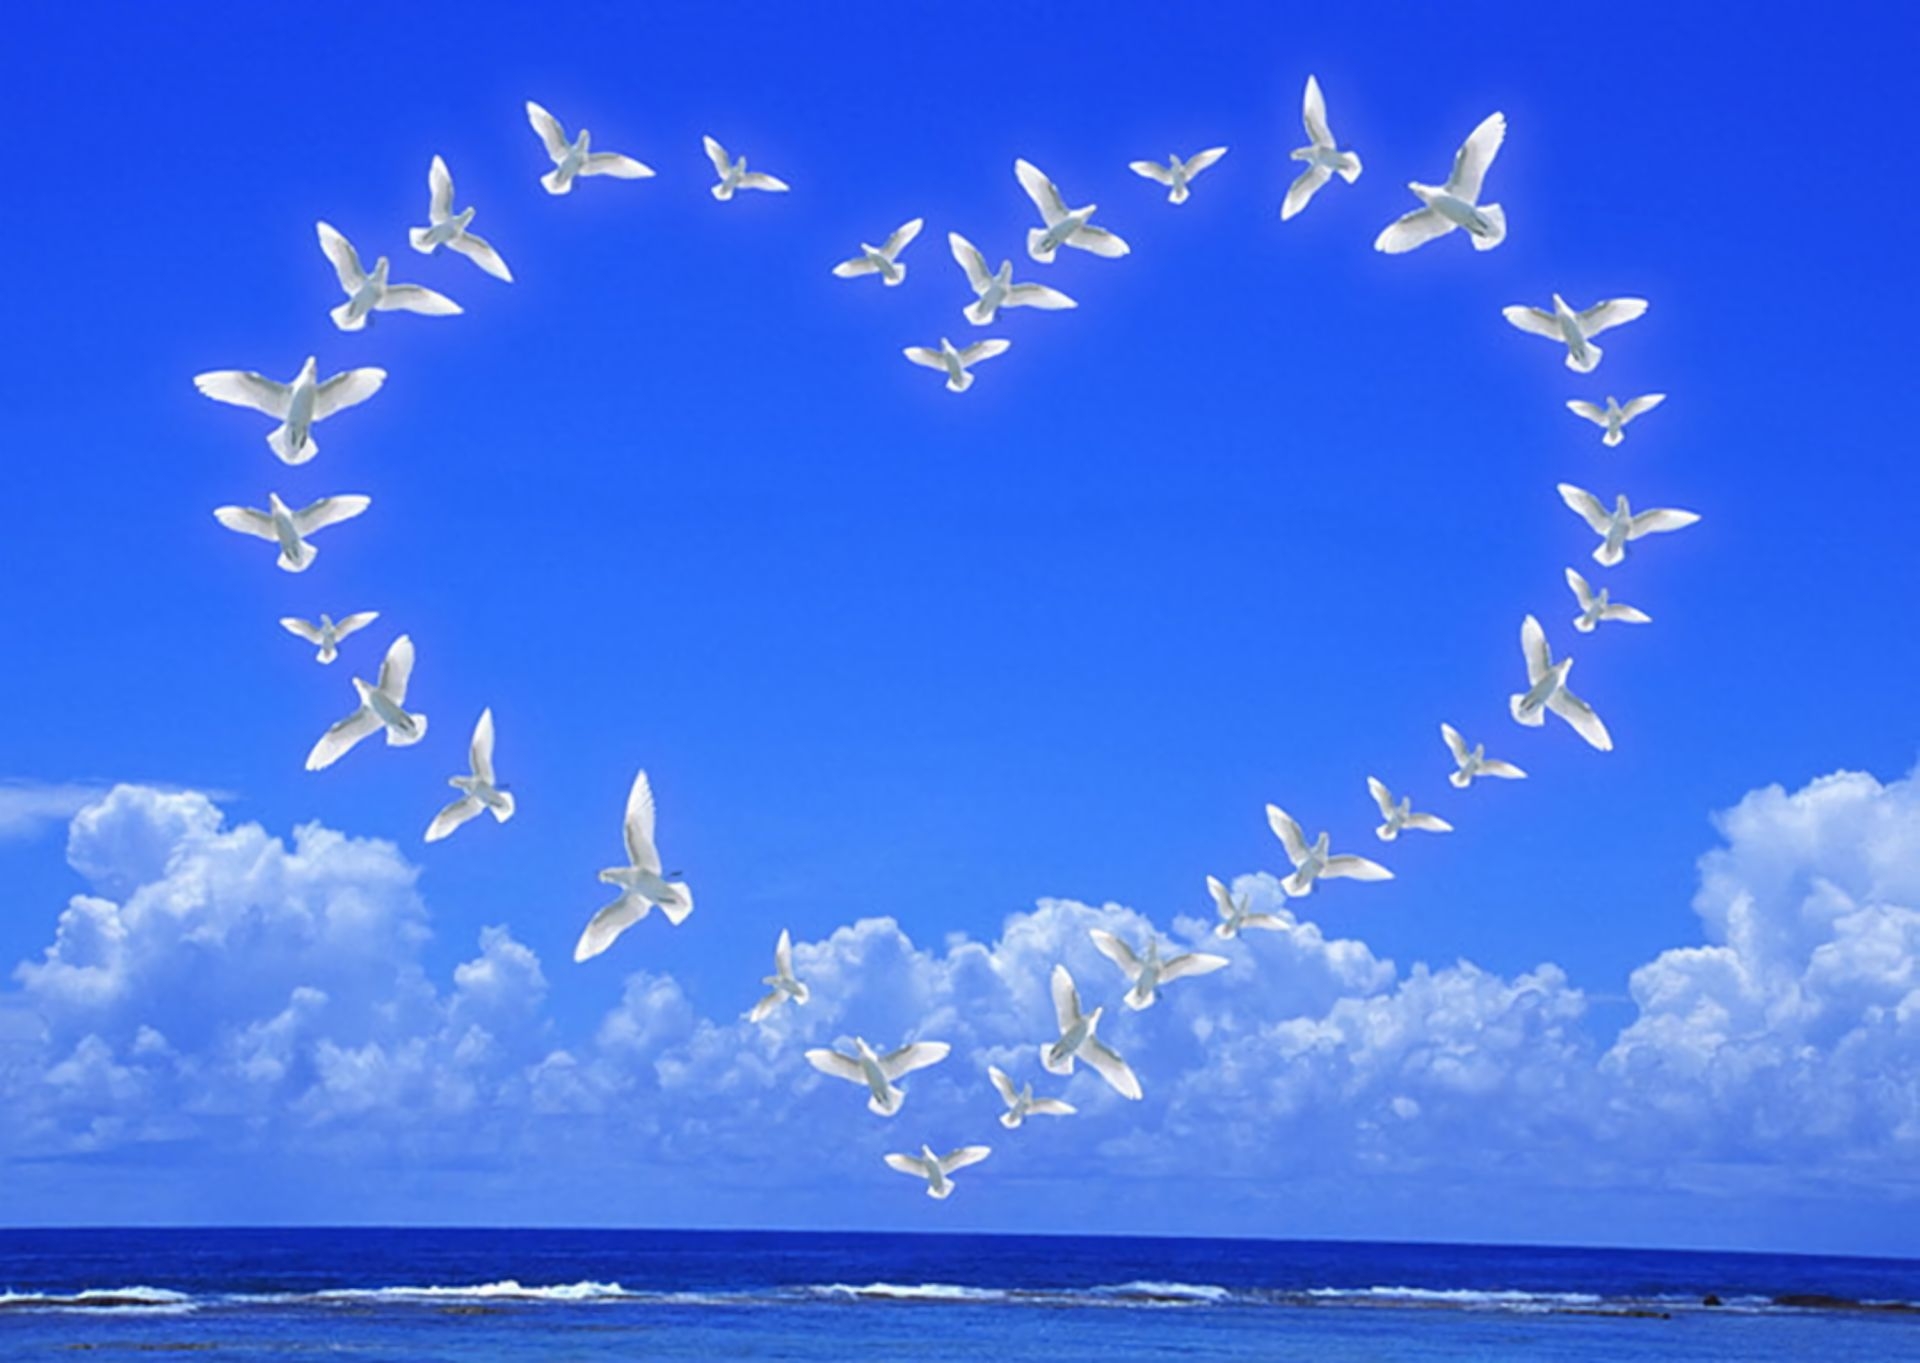 Пролетели года словно птицы. Голубое мирное небо. Счастье у моря. Счастье небо. Мирного неба над головой.